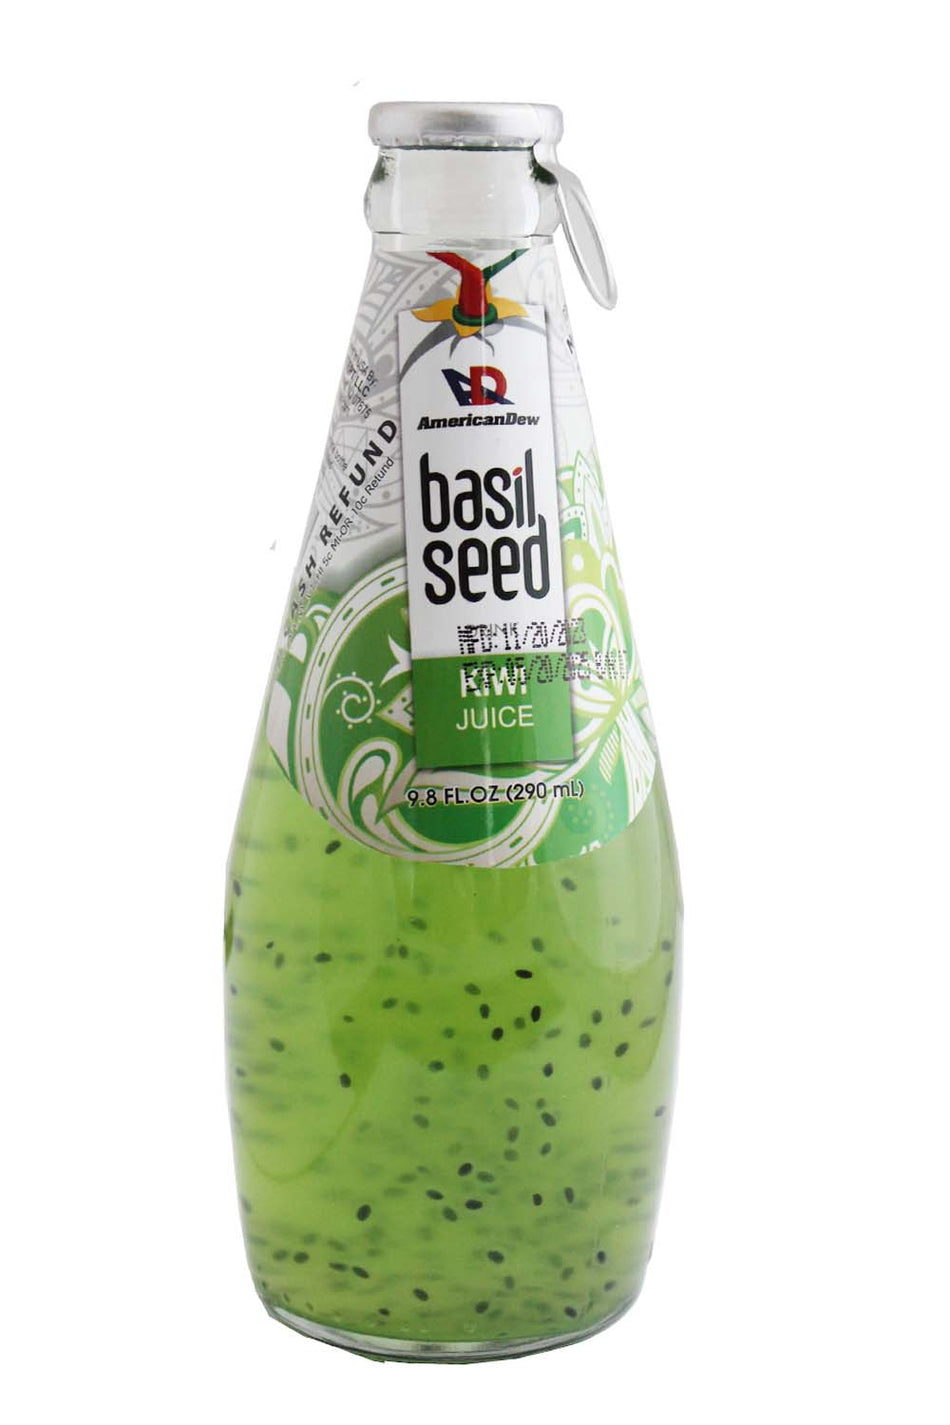 AD Basil Seed Kiwi Juice